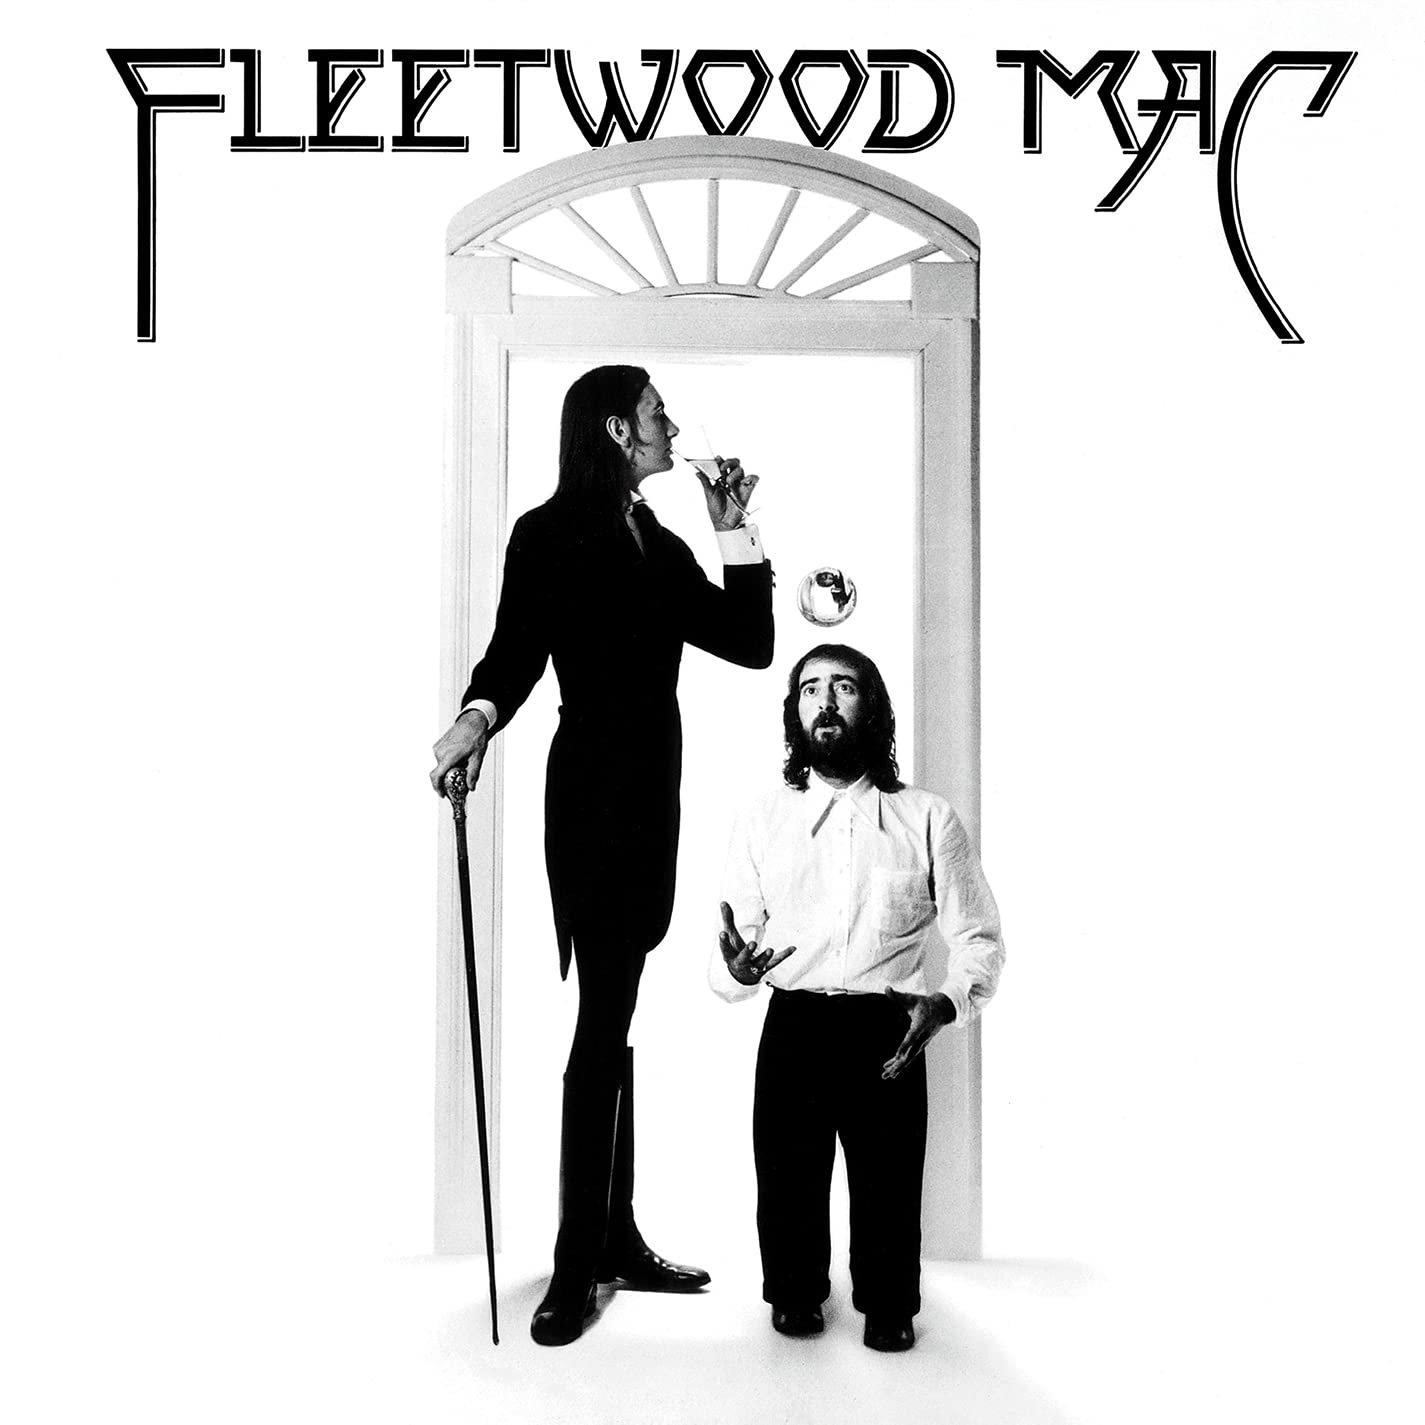 Fleetwood Mac: Fleetwood Mac lp